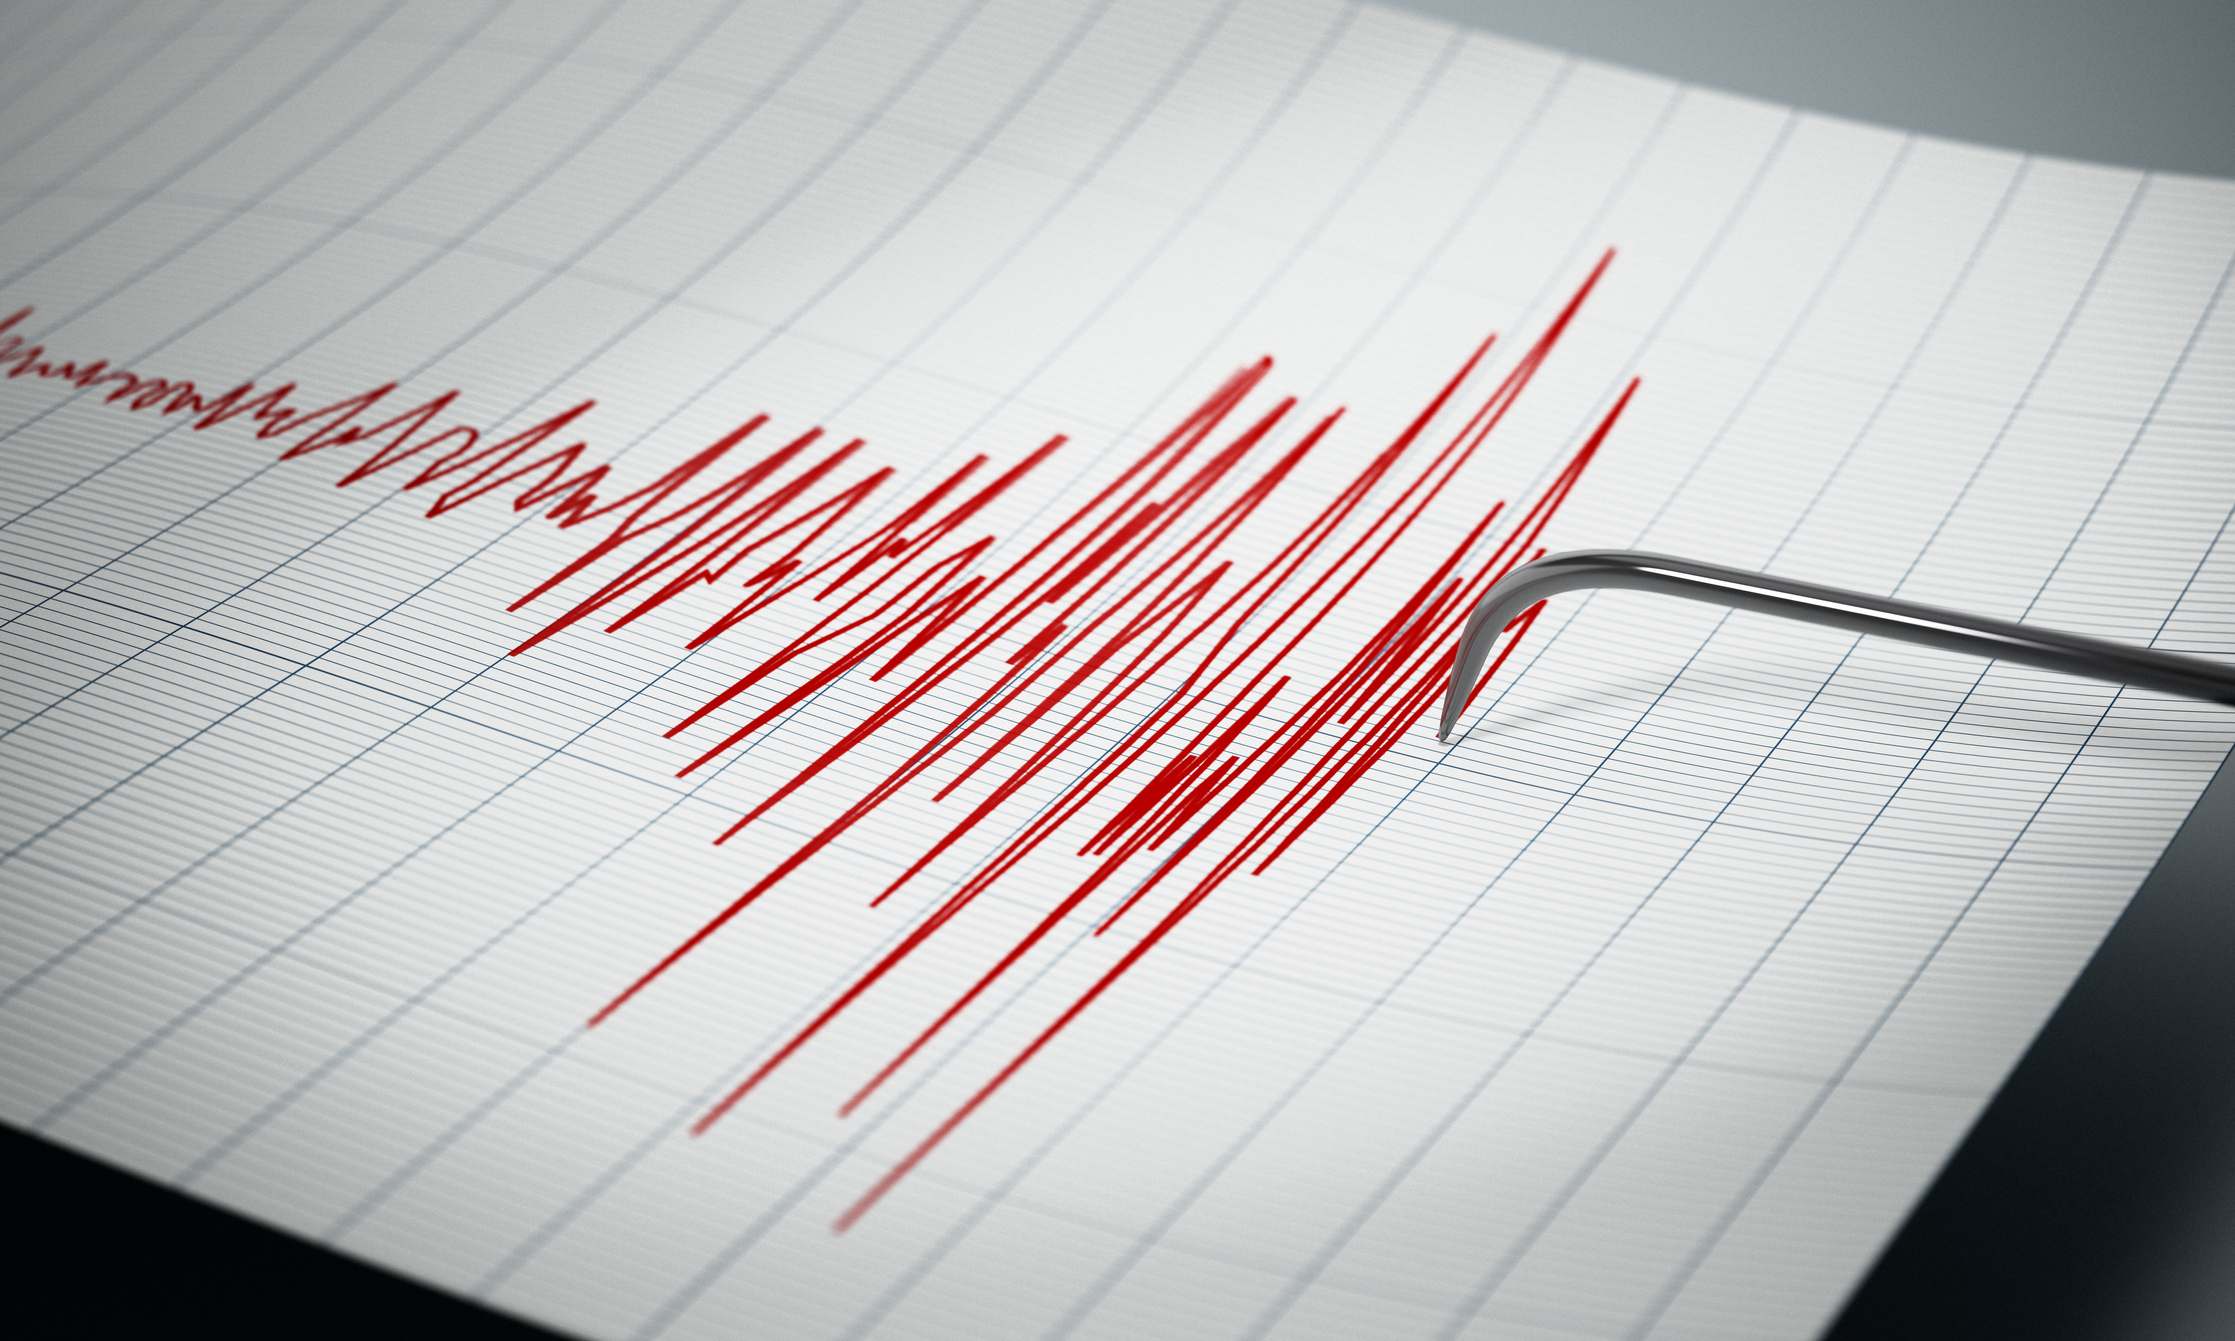 Σεισμός στη Ρόδο: «Δεν ήταν έκπληξη, η περιοχή έχει δώσει μεγαλύτερες δονήσεις», είπε ο Γεράσιμος Παπαδόπουλος